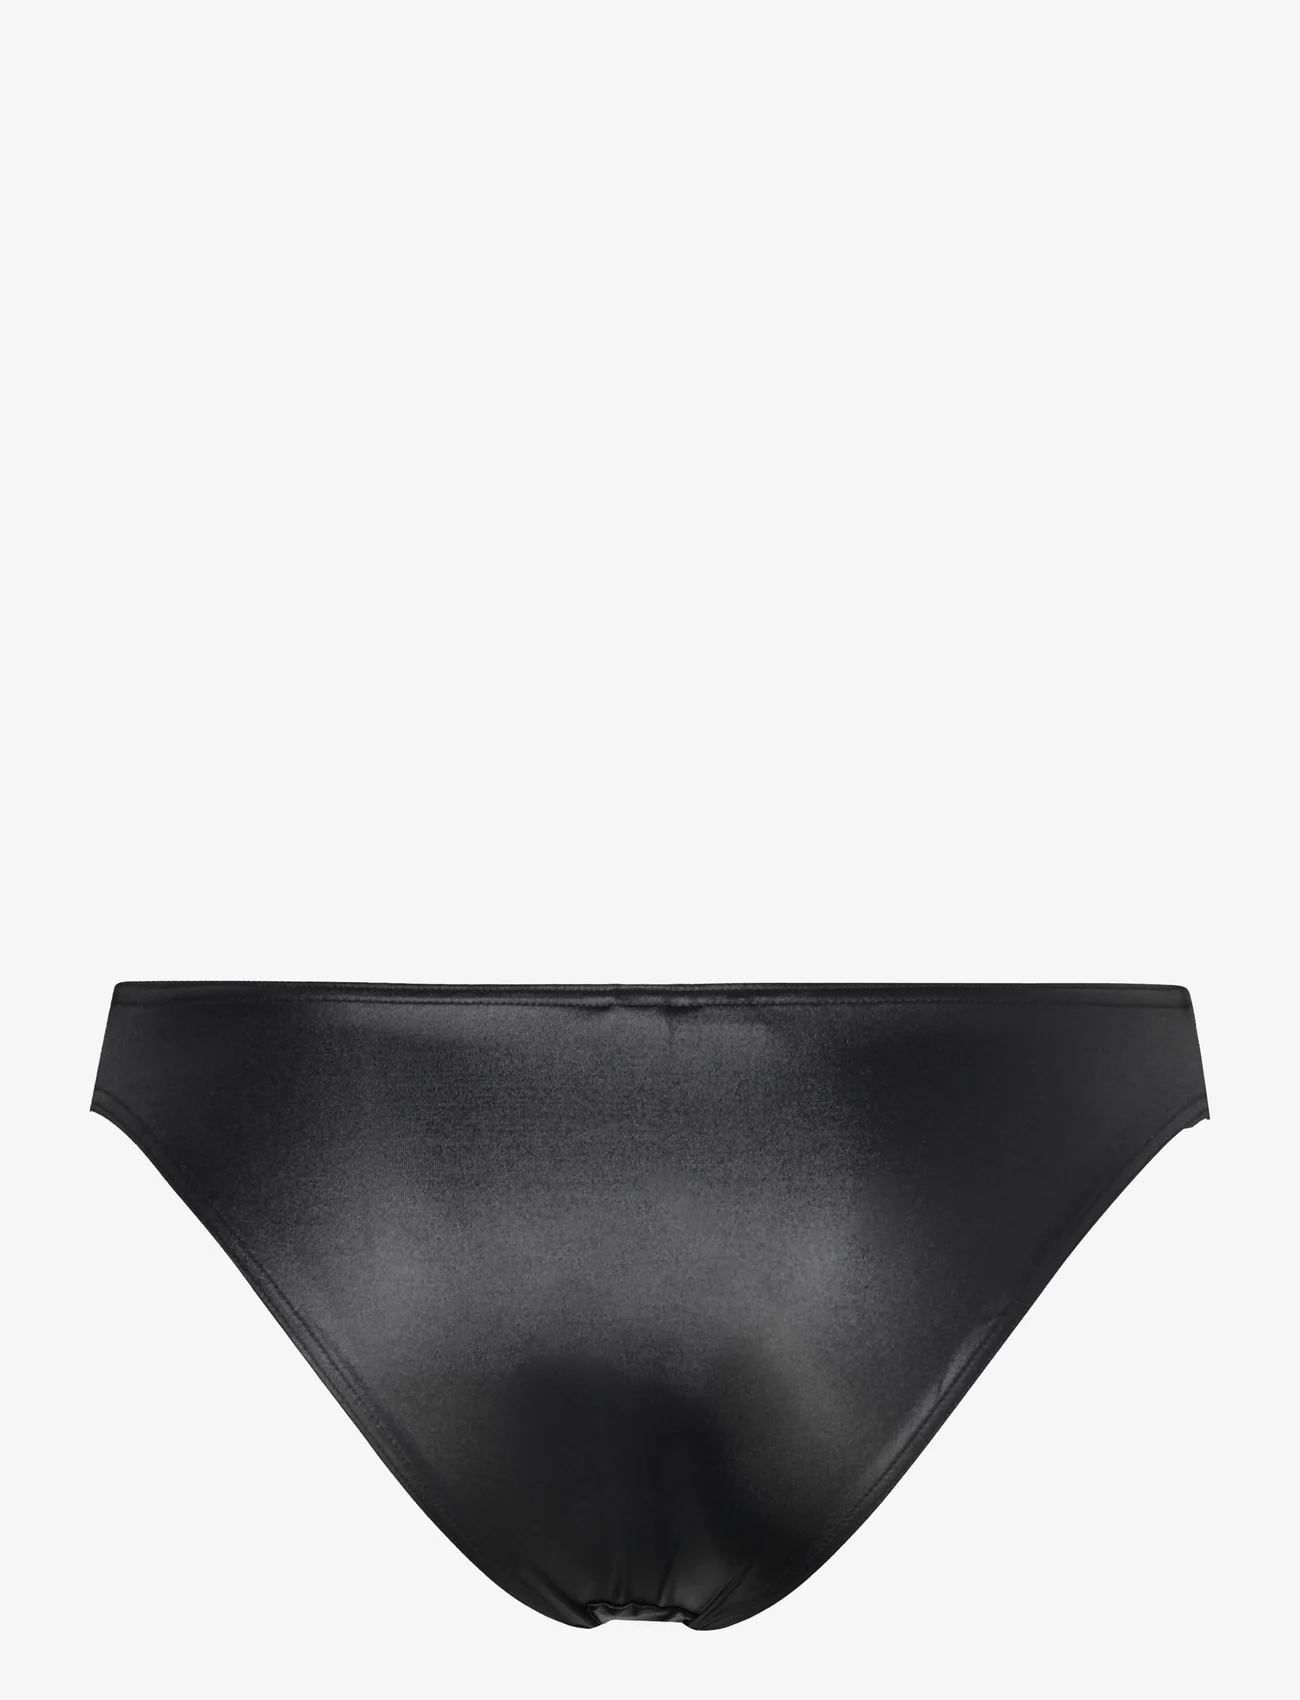 Calvin Klein - CHEEKY BIKINI - majtki bikini - pvh black - 1